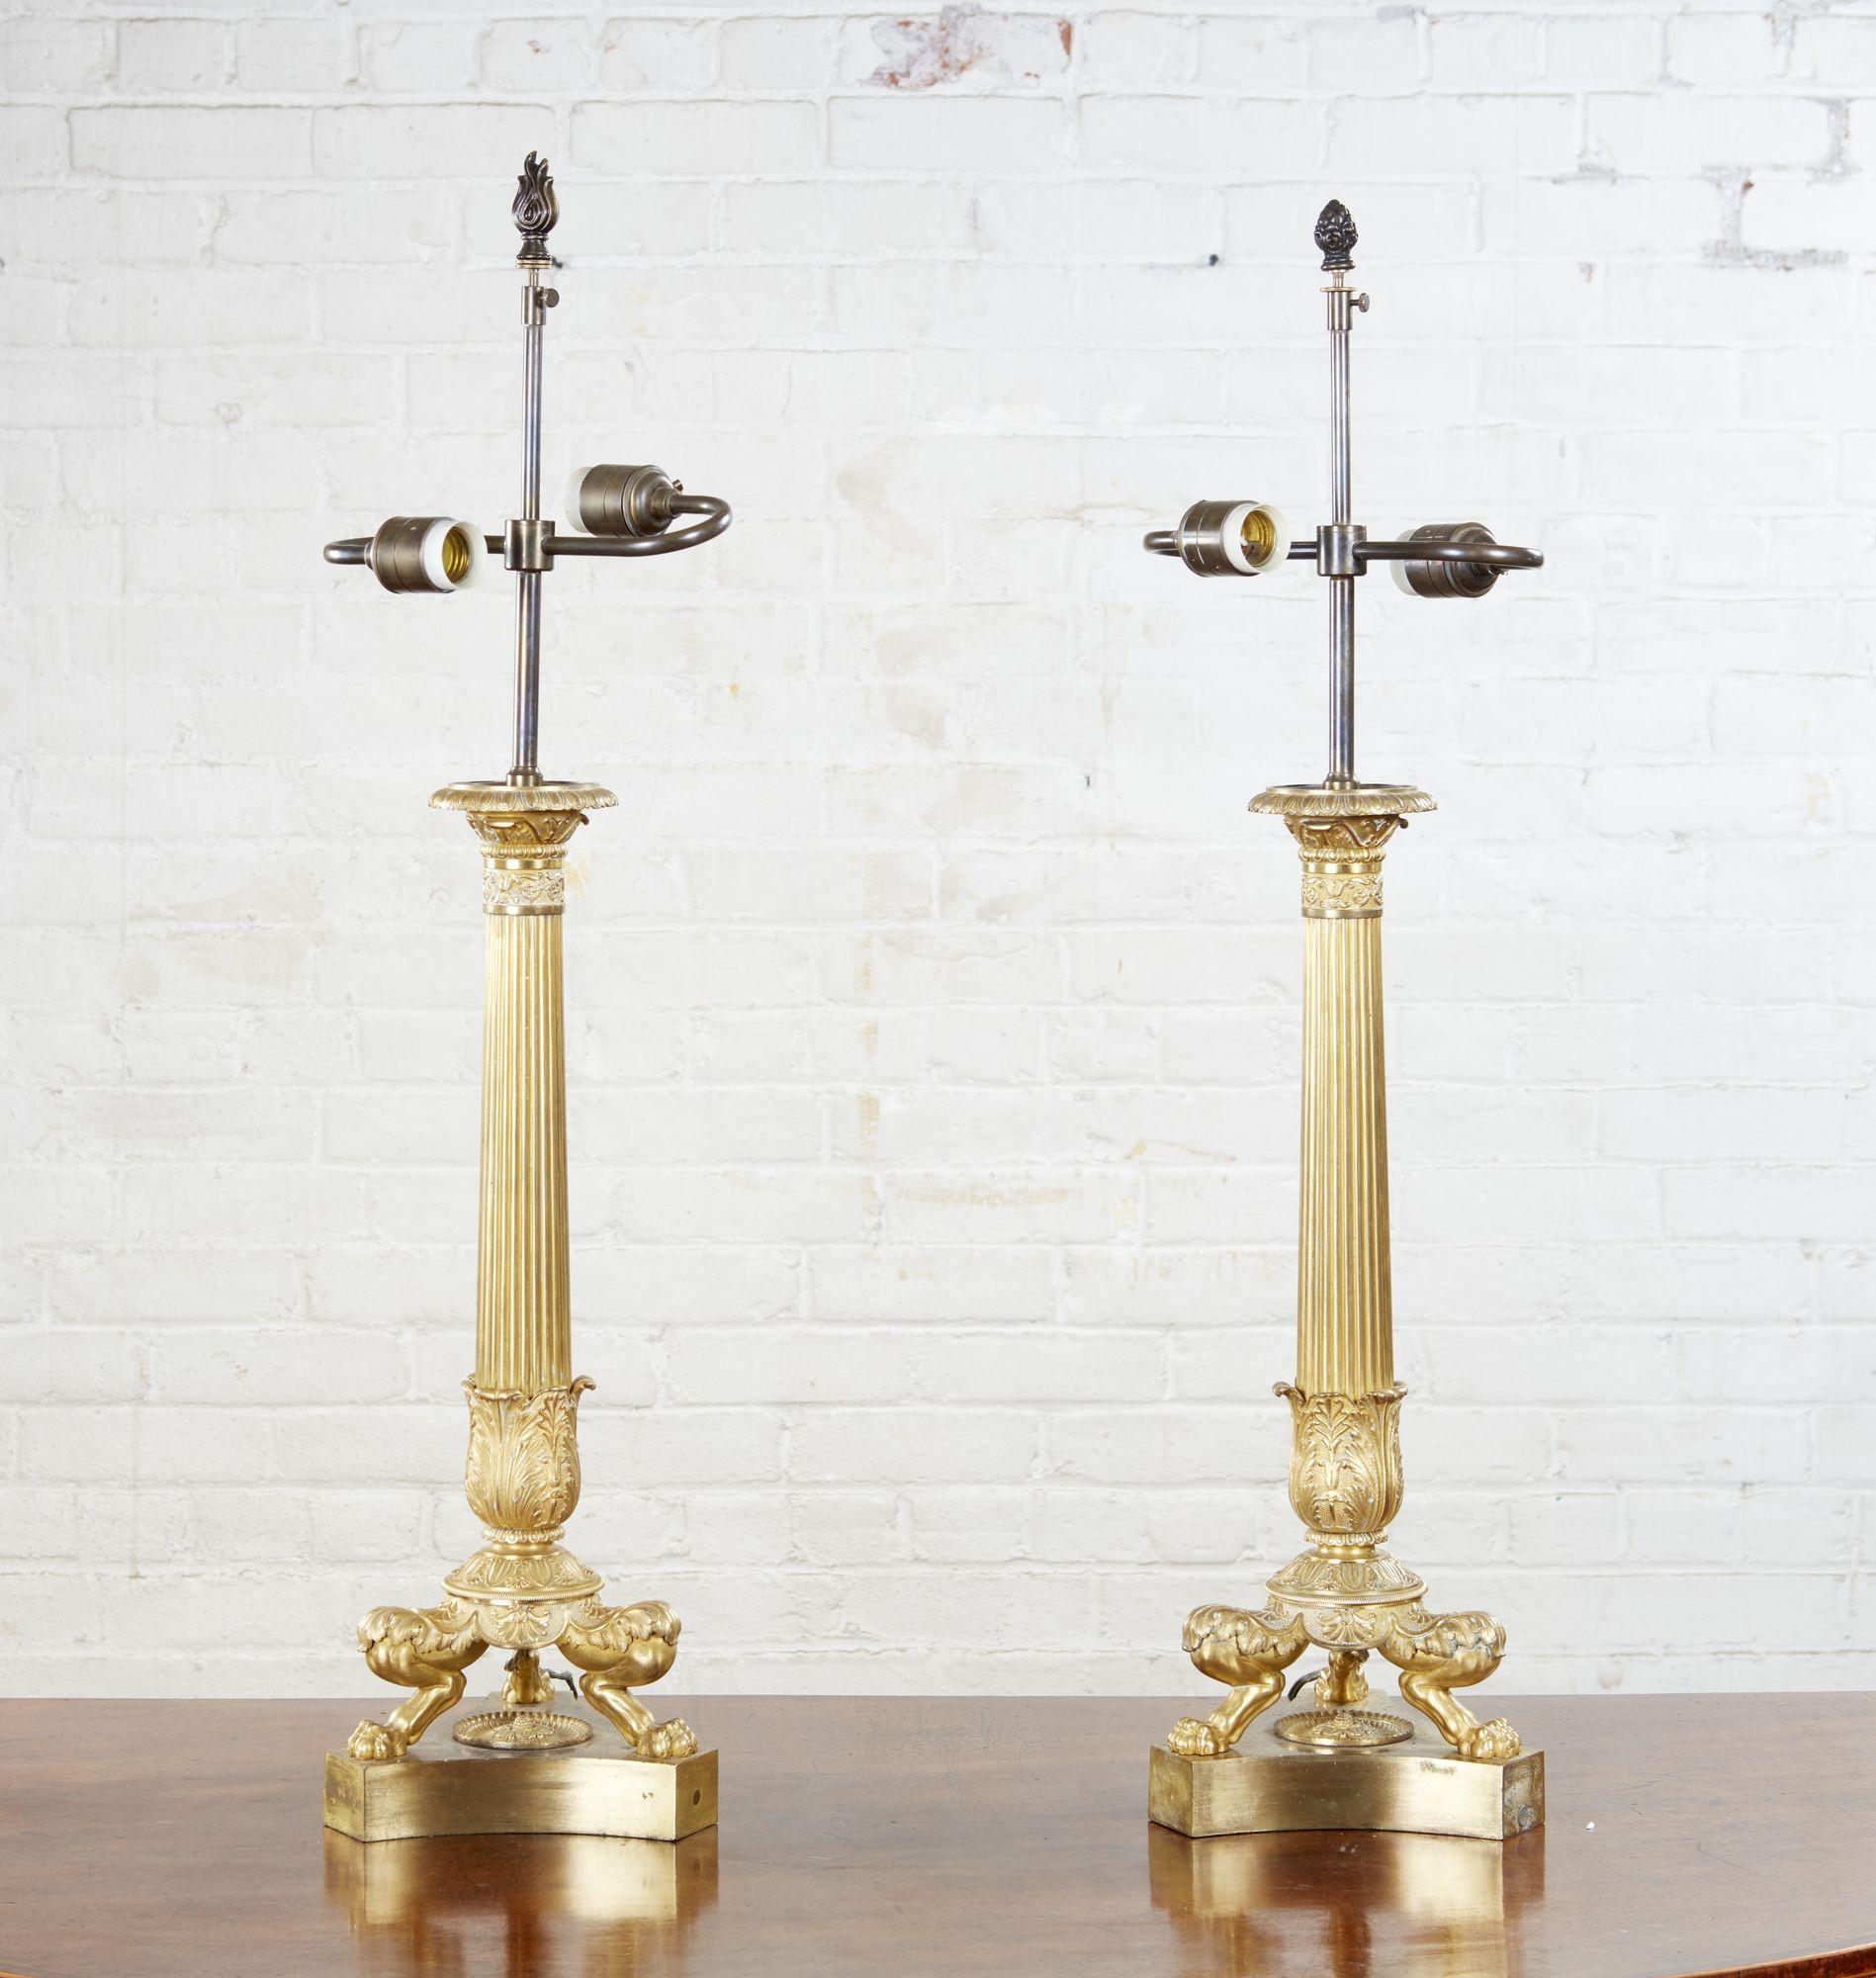 Ein Paar Kandelaber aus Bronze und Feuervergoldung aus dem frühen 19. Jahrhundert, jetzt als Lampen montiert und verdrahtet, mit fein ziselierten Details, mit sich verjüngenden kannelierten Säulen, die von einem mit Ei und Pfeil verzierten Kapitell